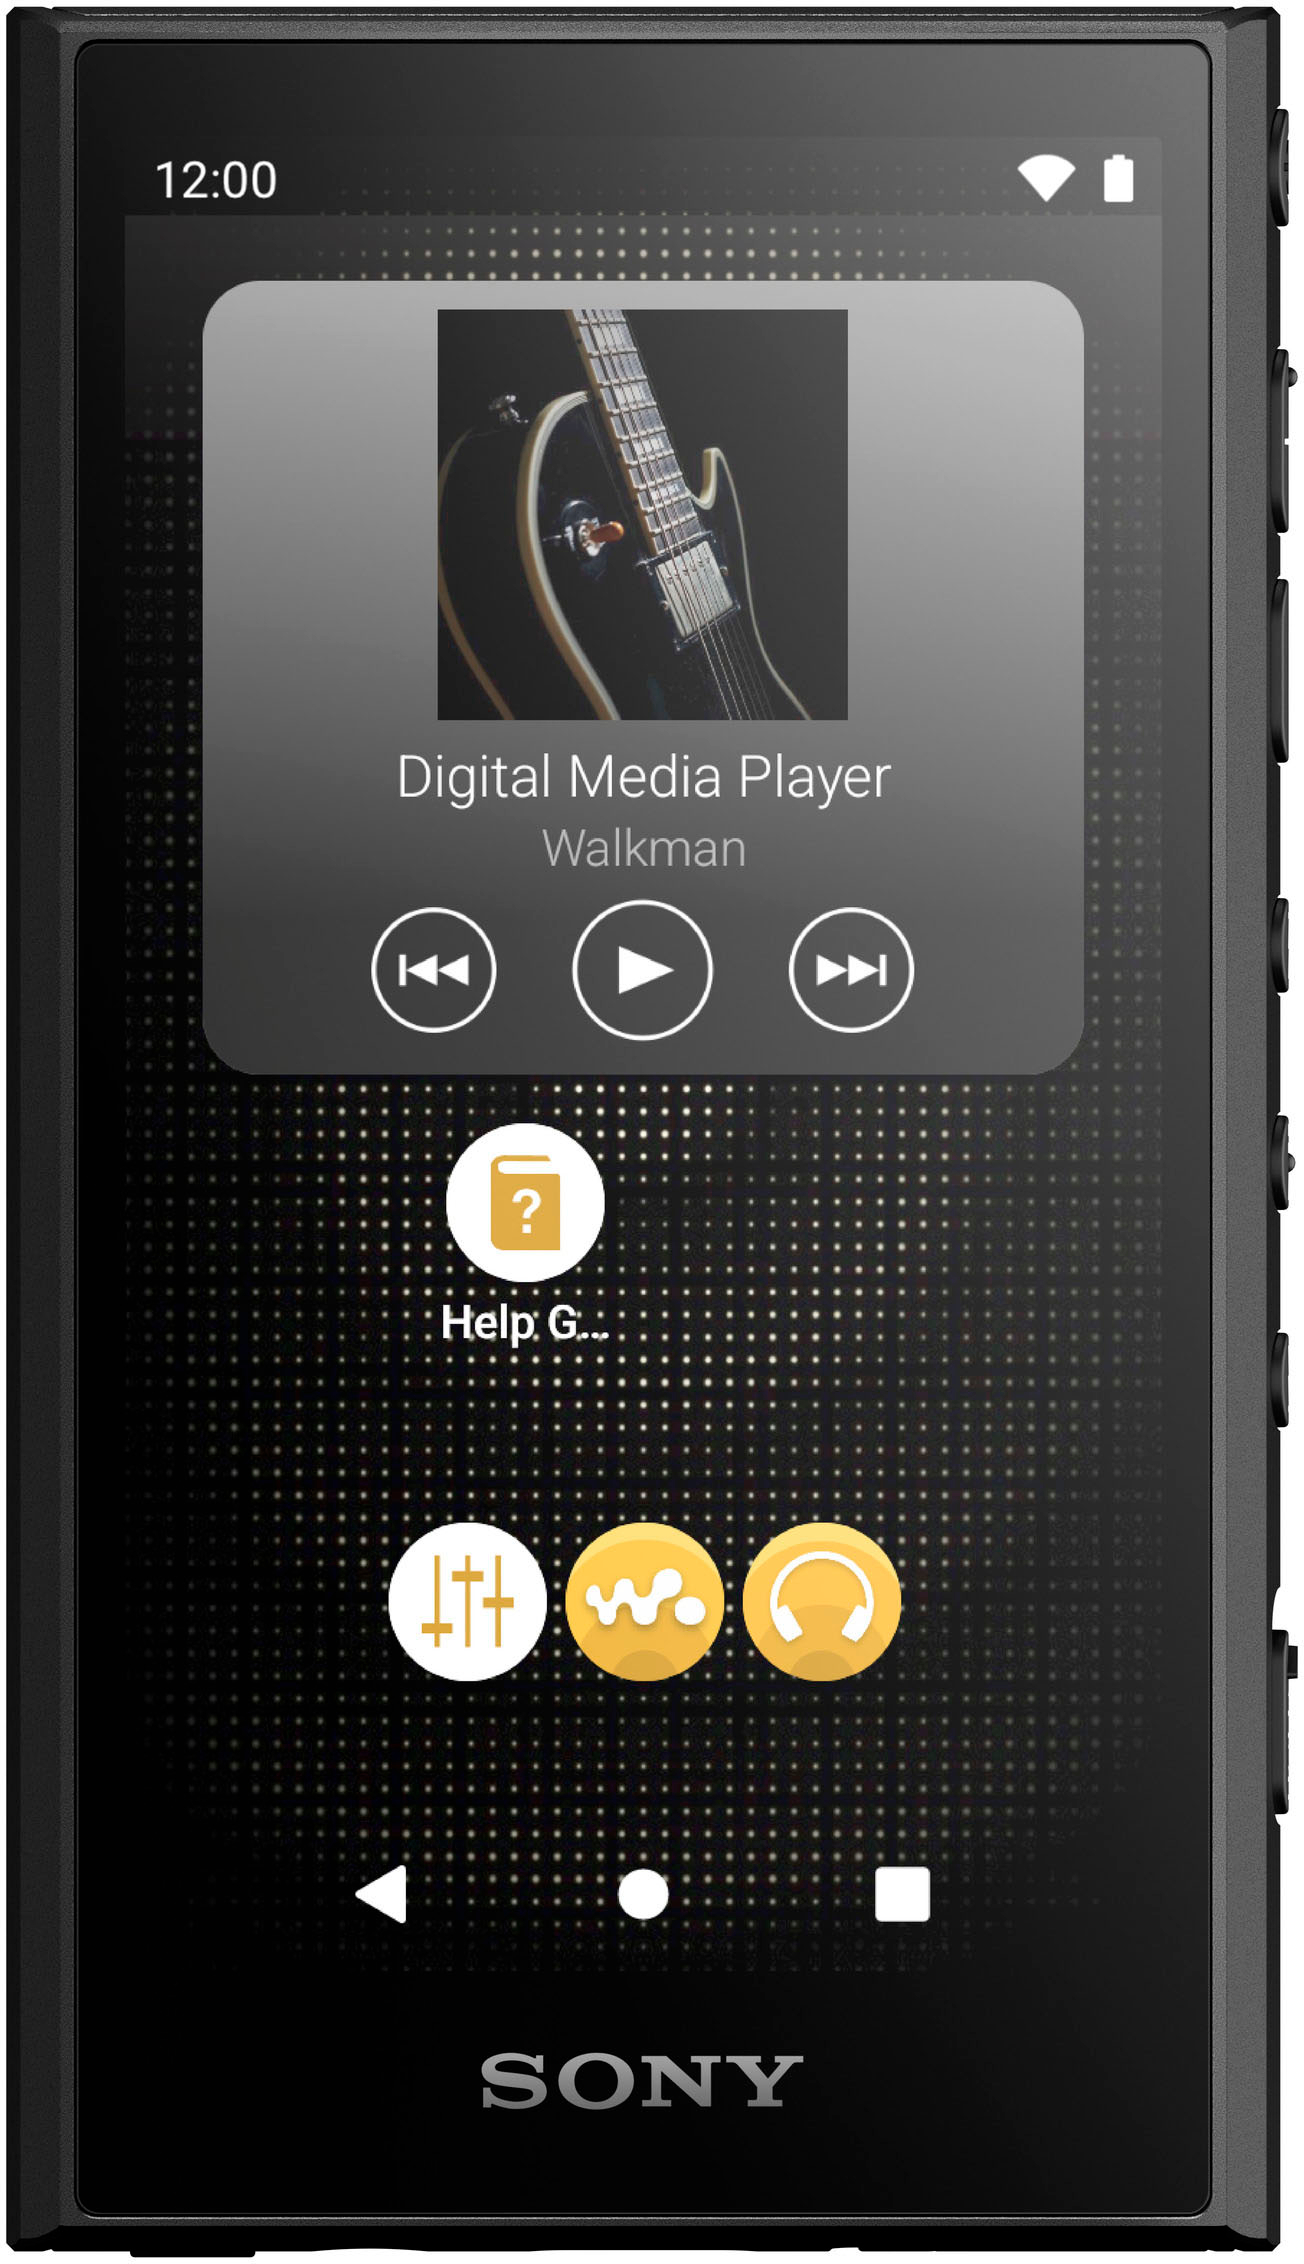 Sony NWWM1AM2 Walkman High Resolution Digital Music Player Black NWWM1AM2 -  Best Buy